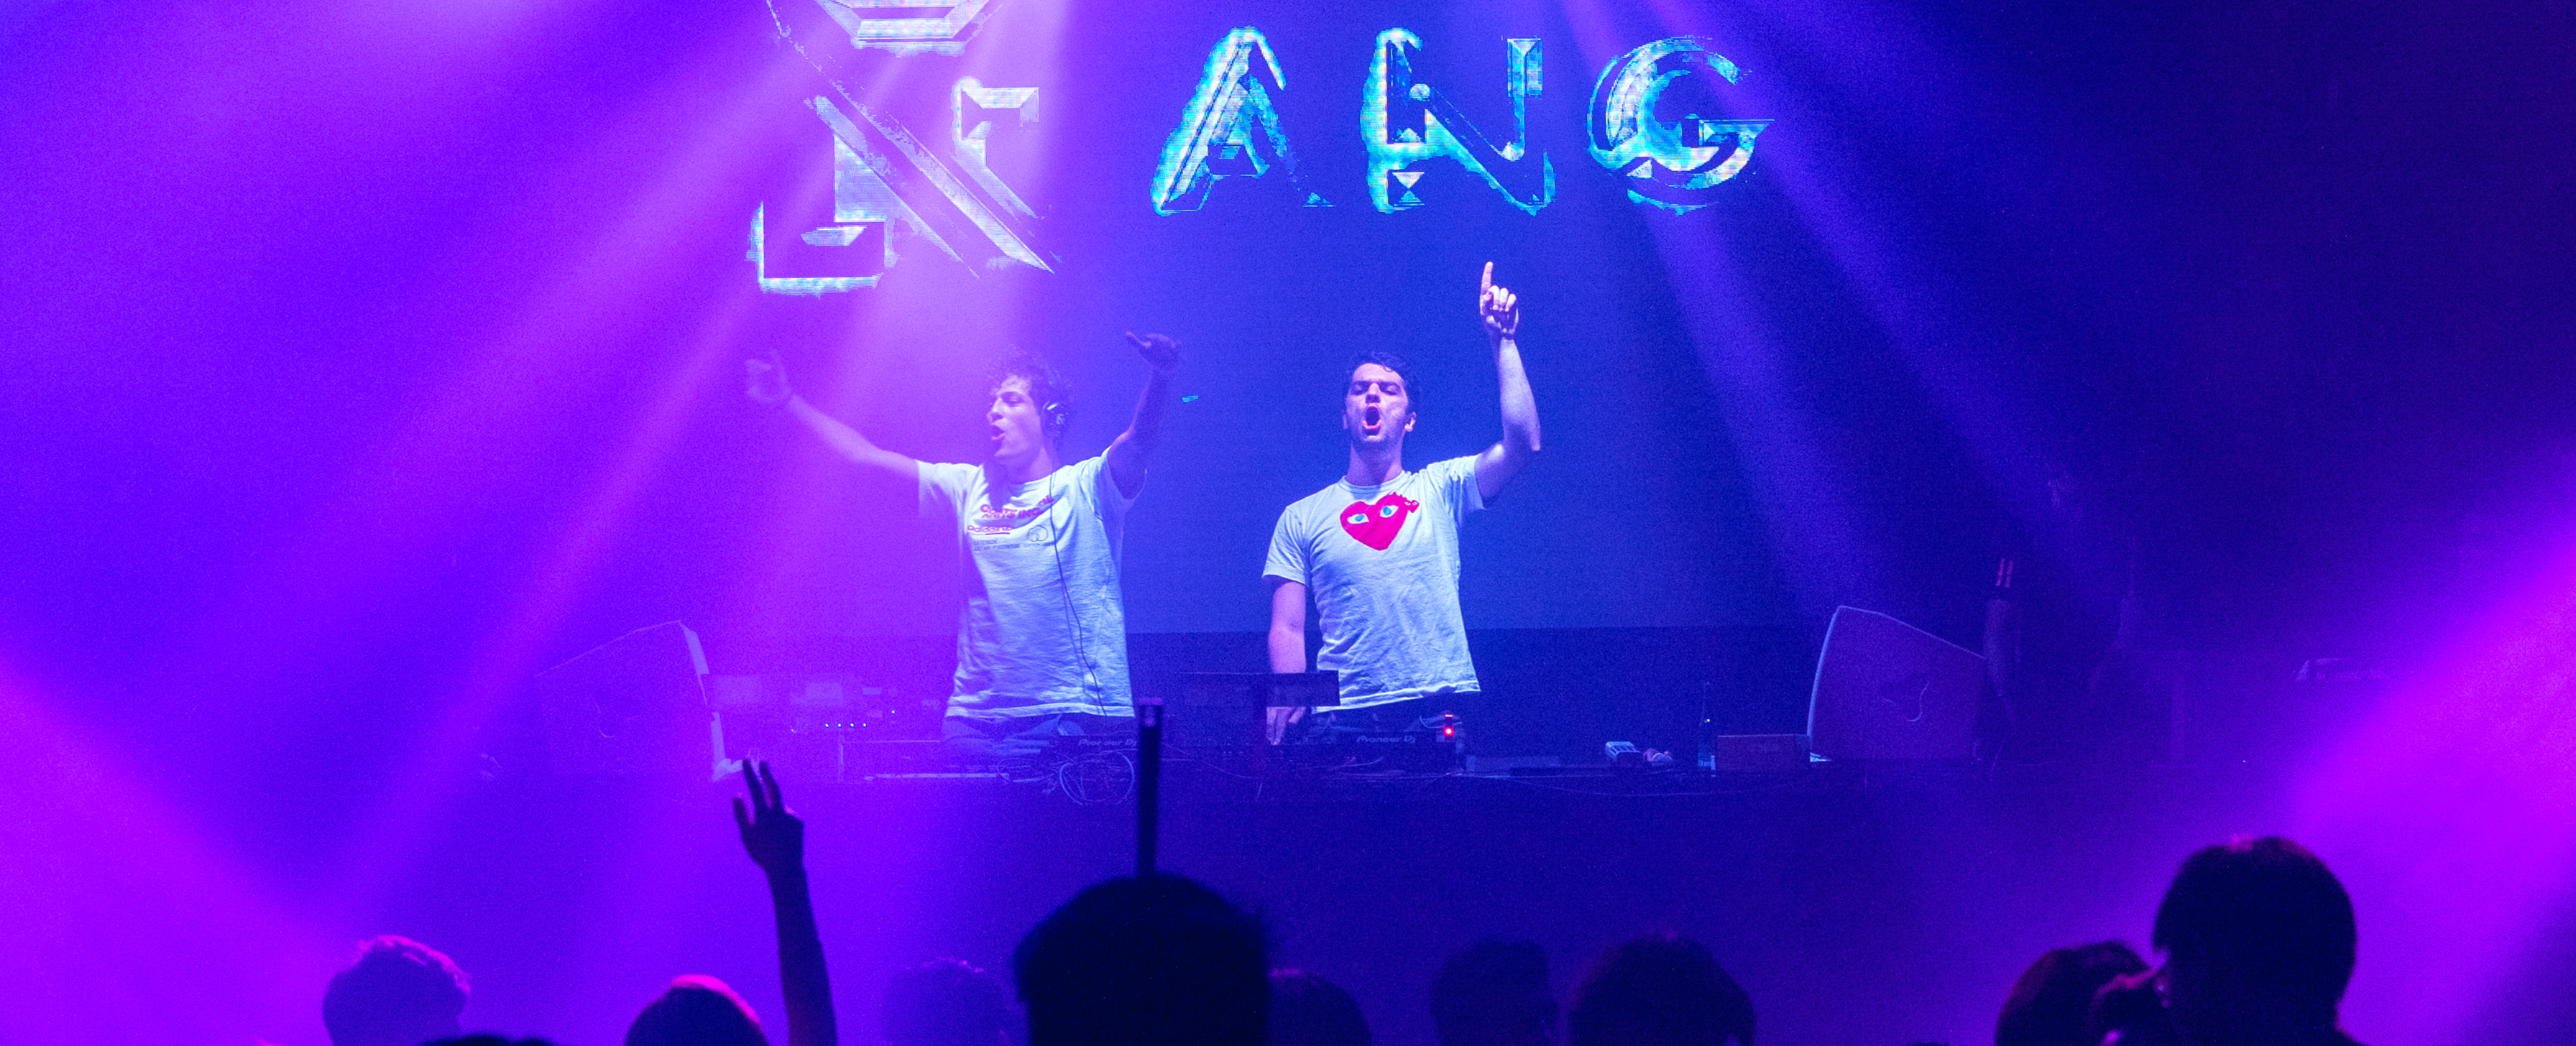 ANG presenta “Rave City” primer lanzamiento mexicano en “Rave Culture” con W&W